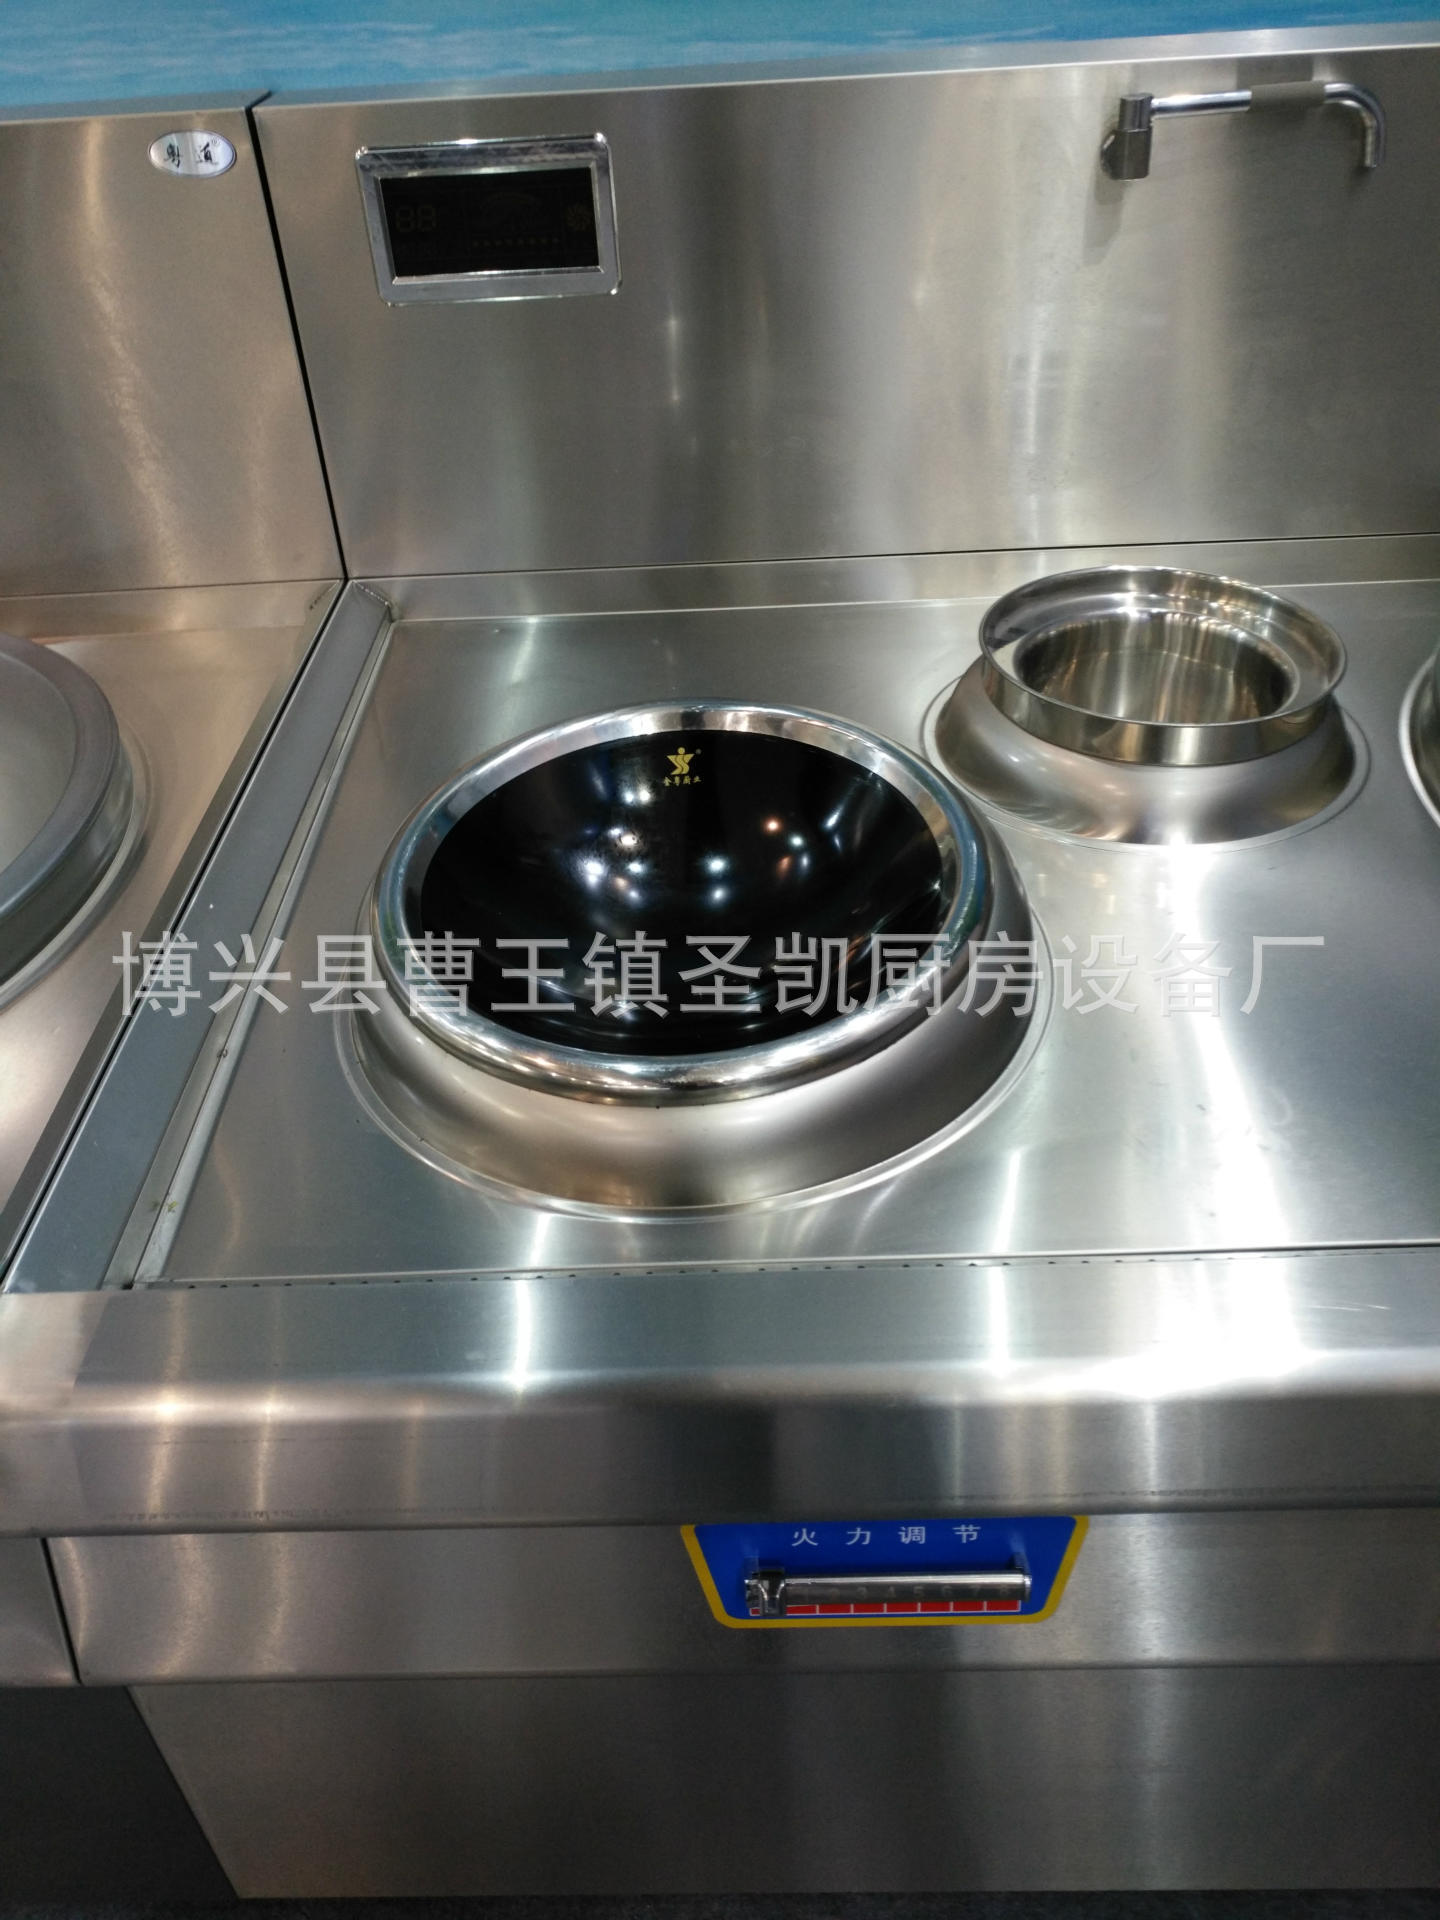 批发商用不锈钢电磁灶电磁炉低烫炉煲仔炉电磁灶厨房用品